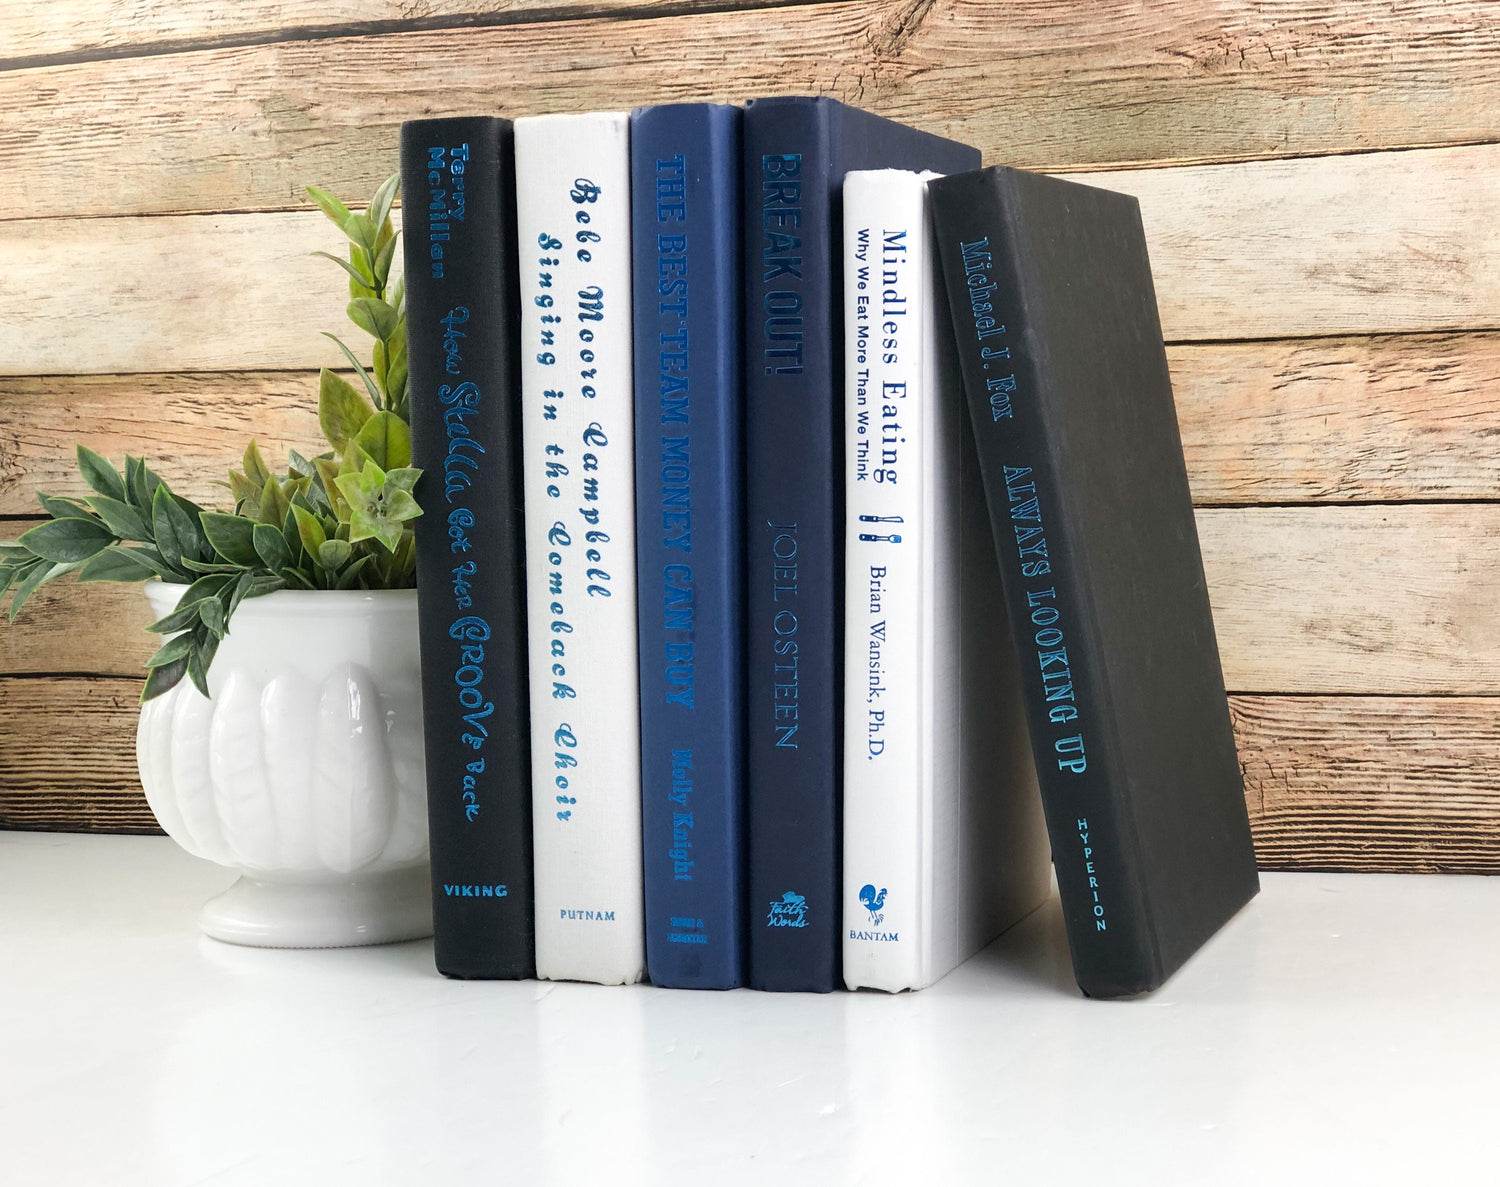 Blue Books for Shelf Decor